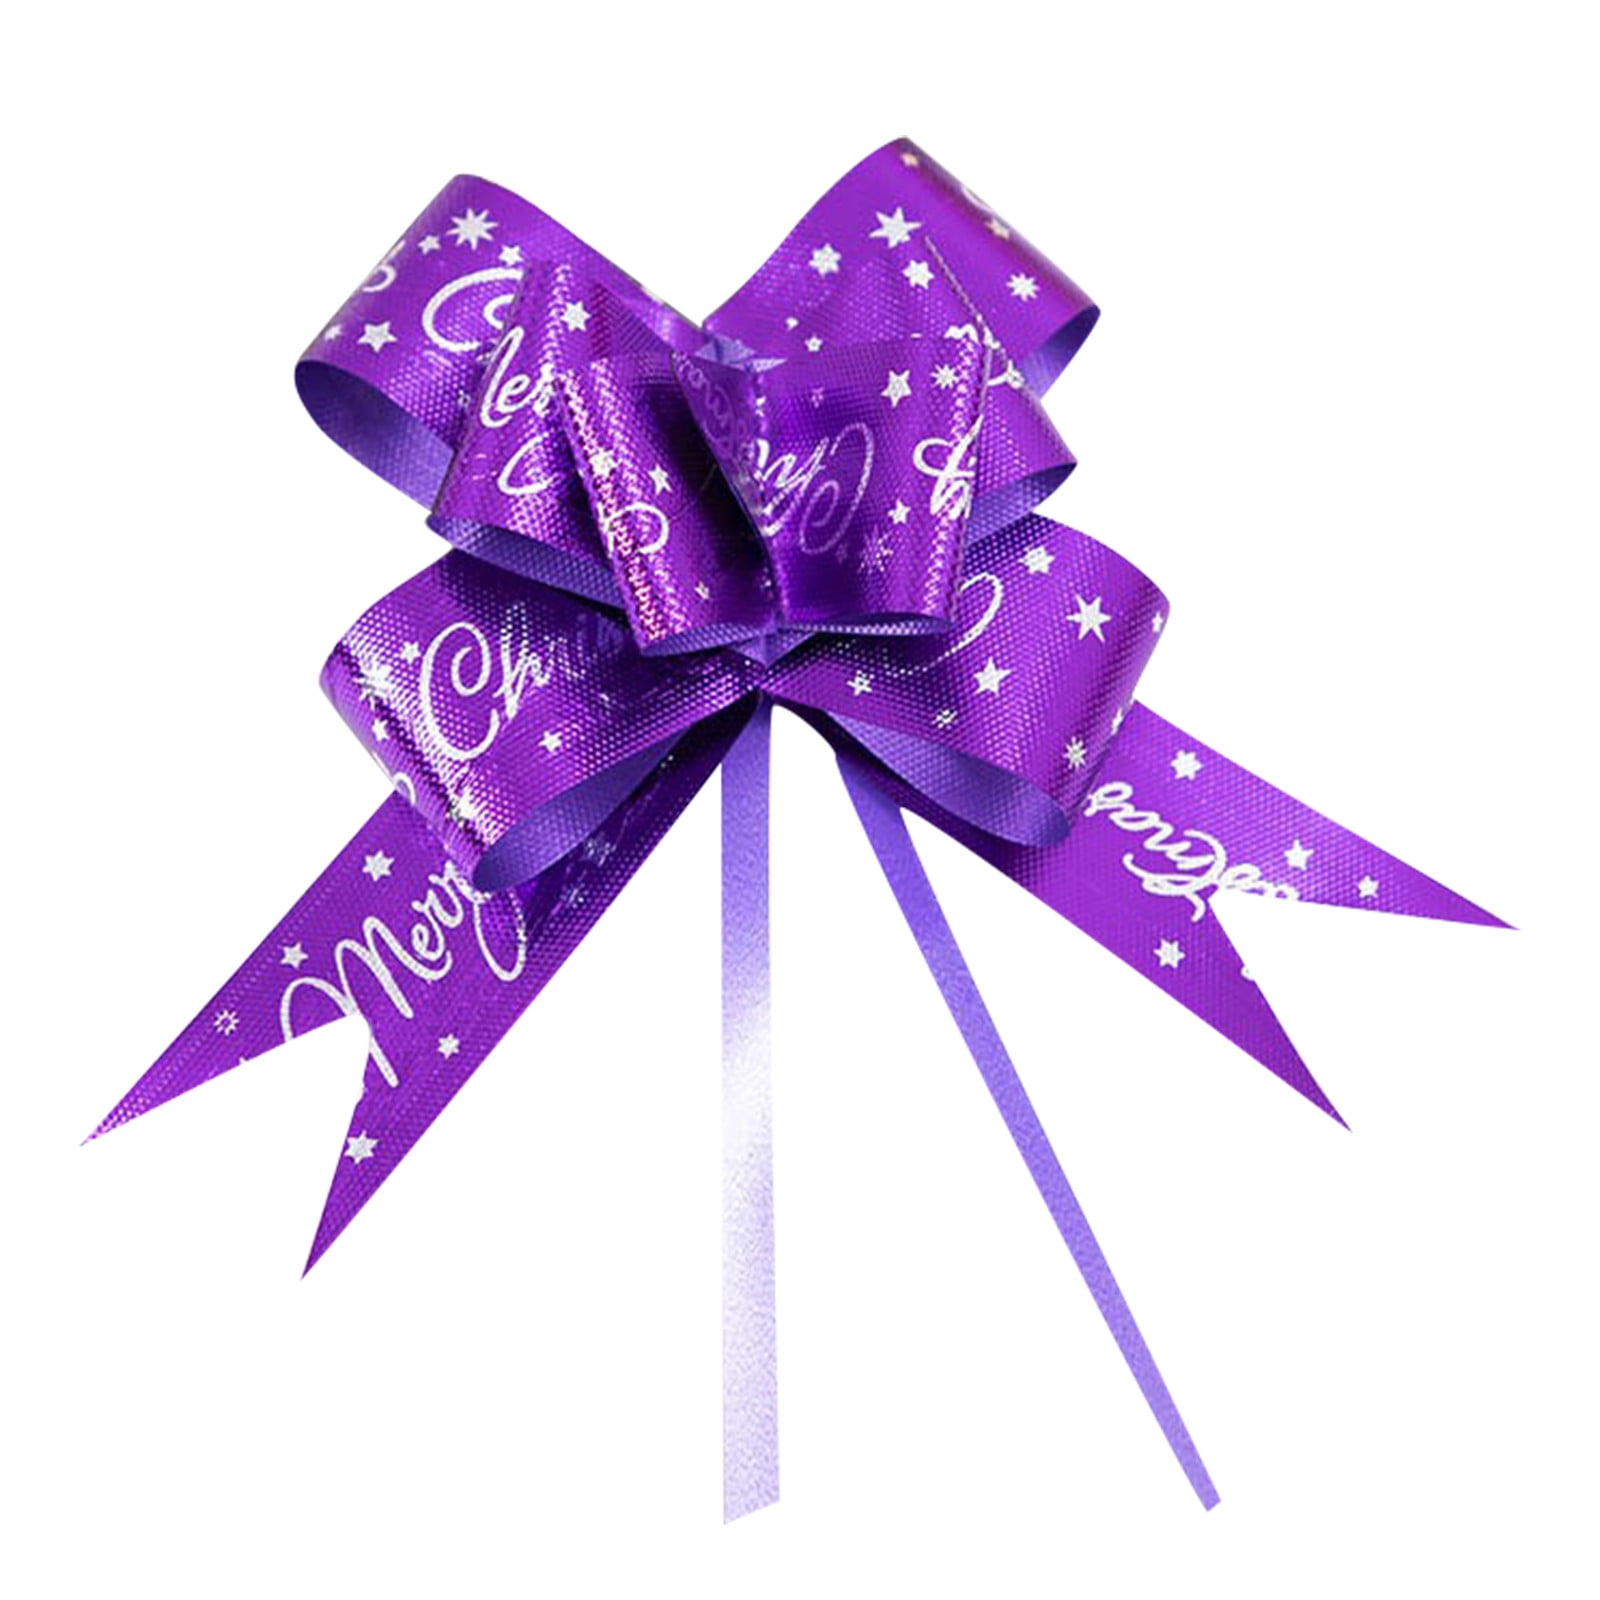 Peel & stick purple grosgrain awareness ribbons - 10 pack